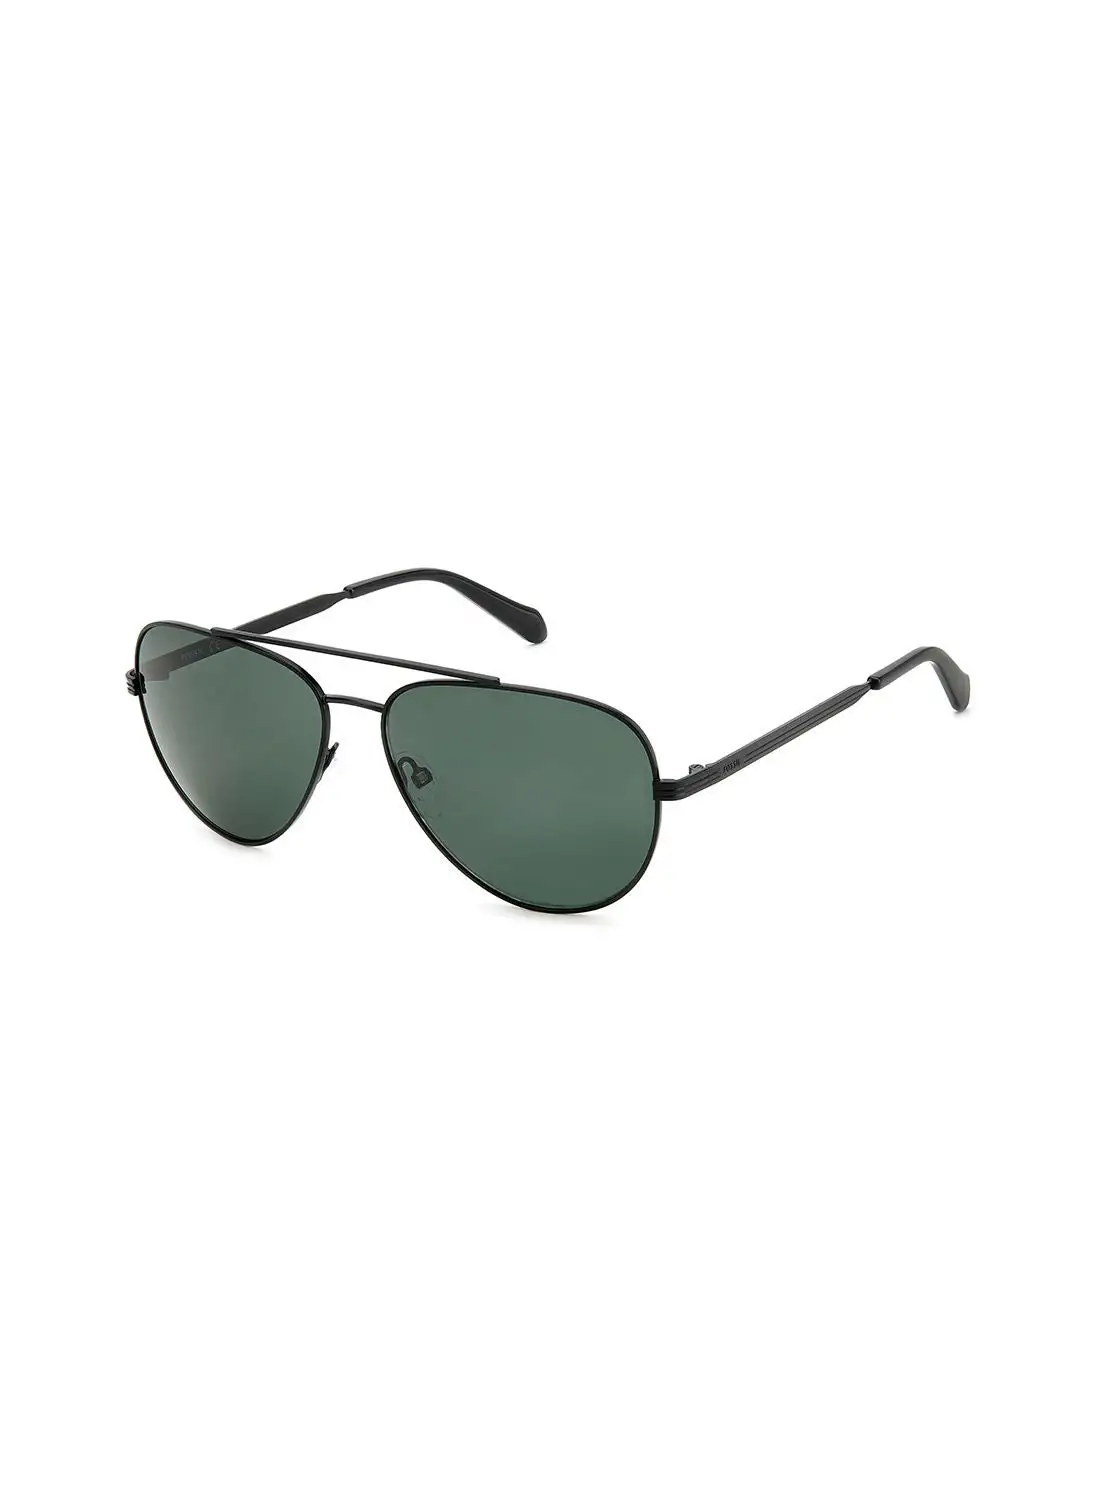 FOSSIL Men's UV Protection Pilot Sunglasses - Fos 3144/G/S Mtt Black 60 - Lens Size: 60 Mm